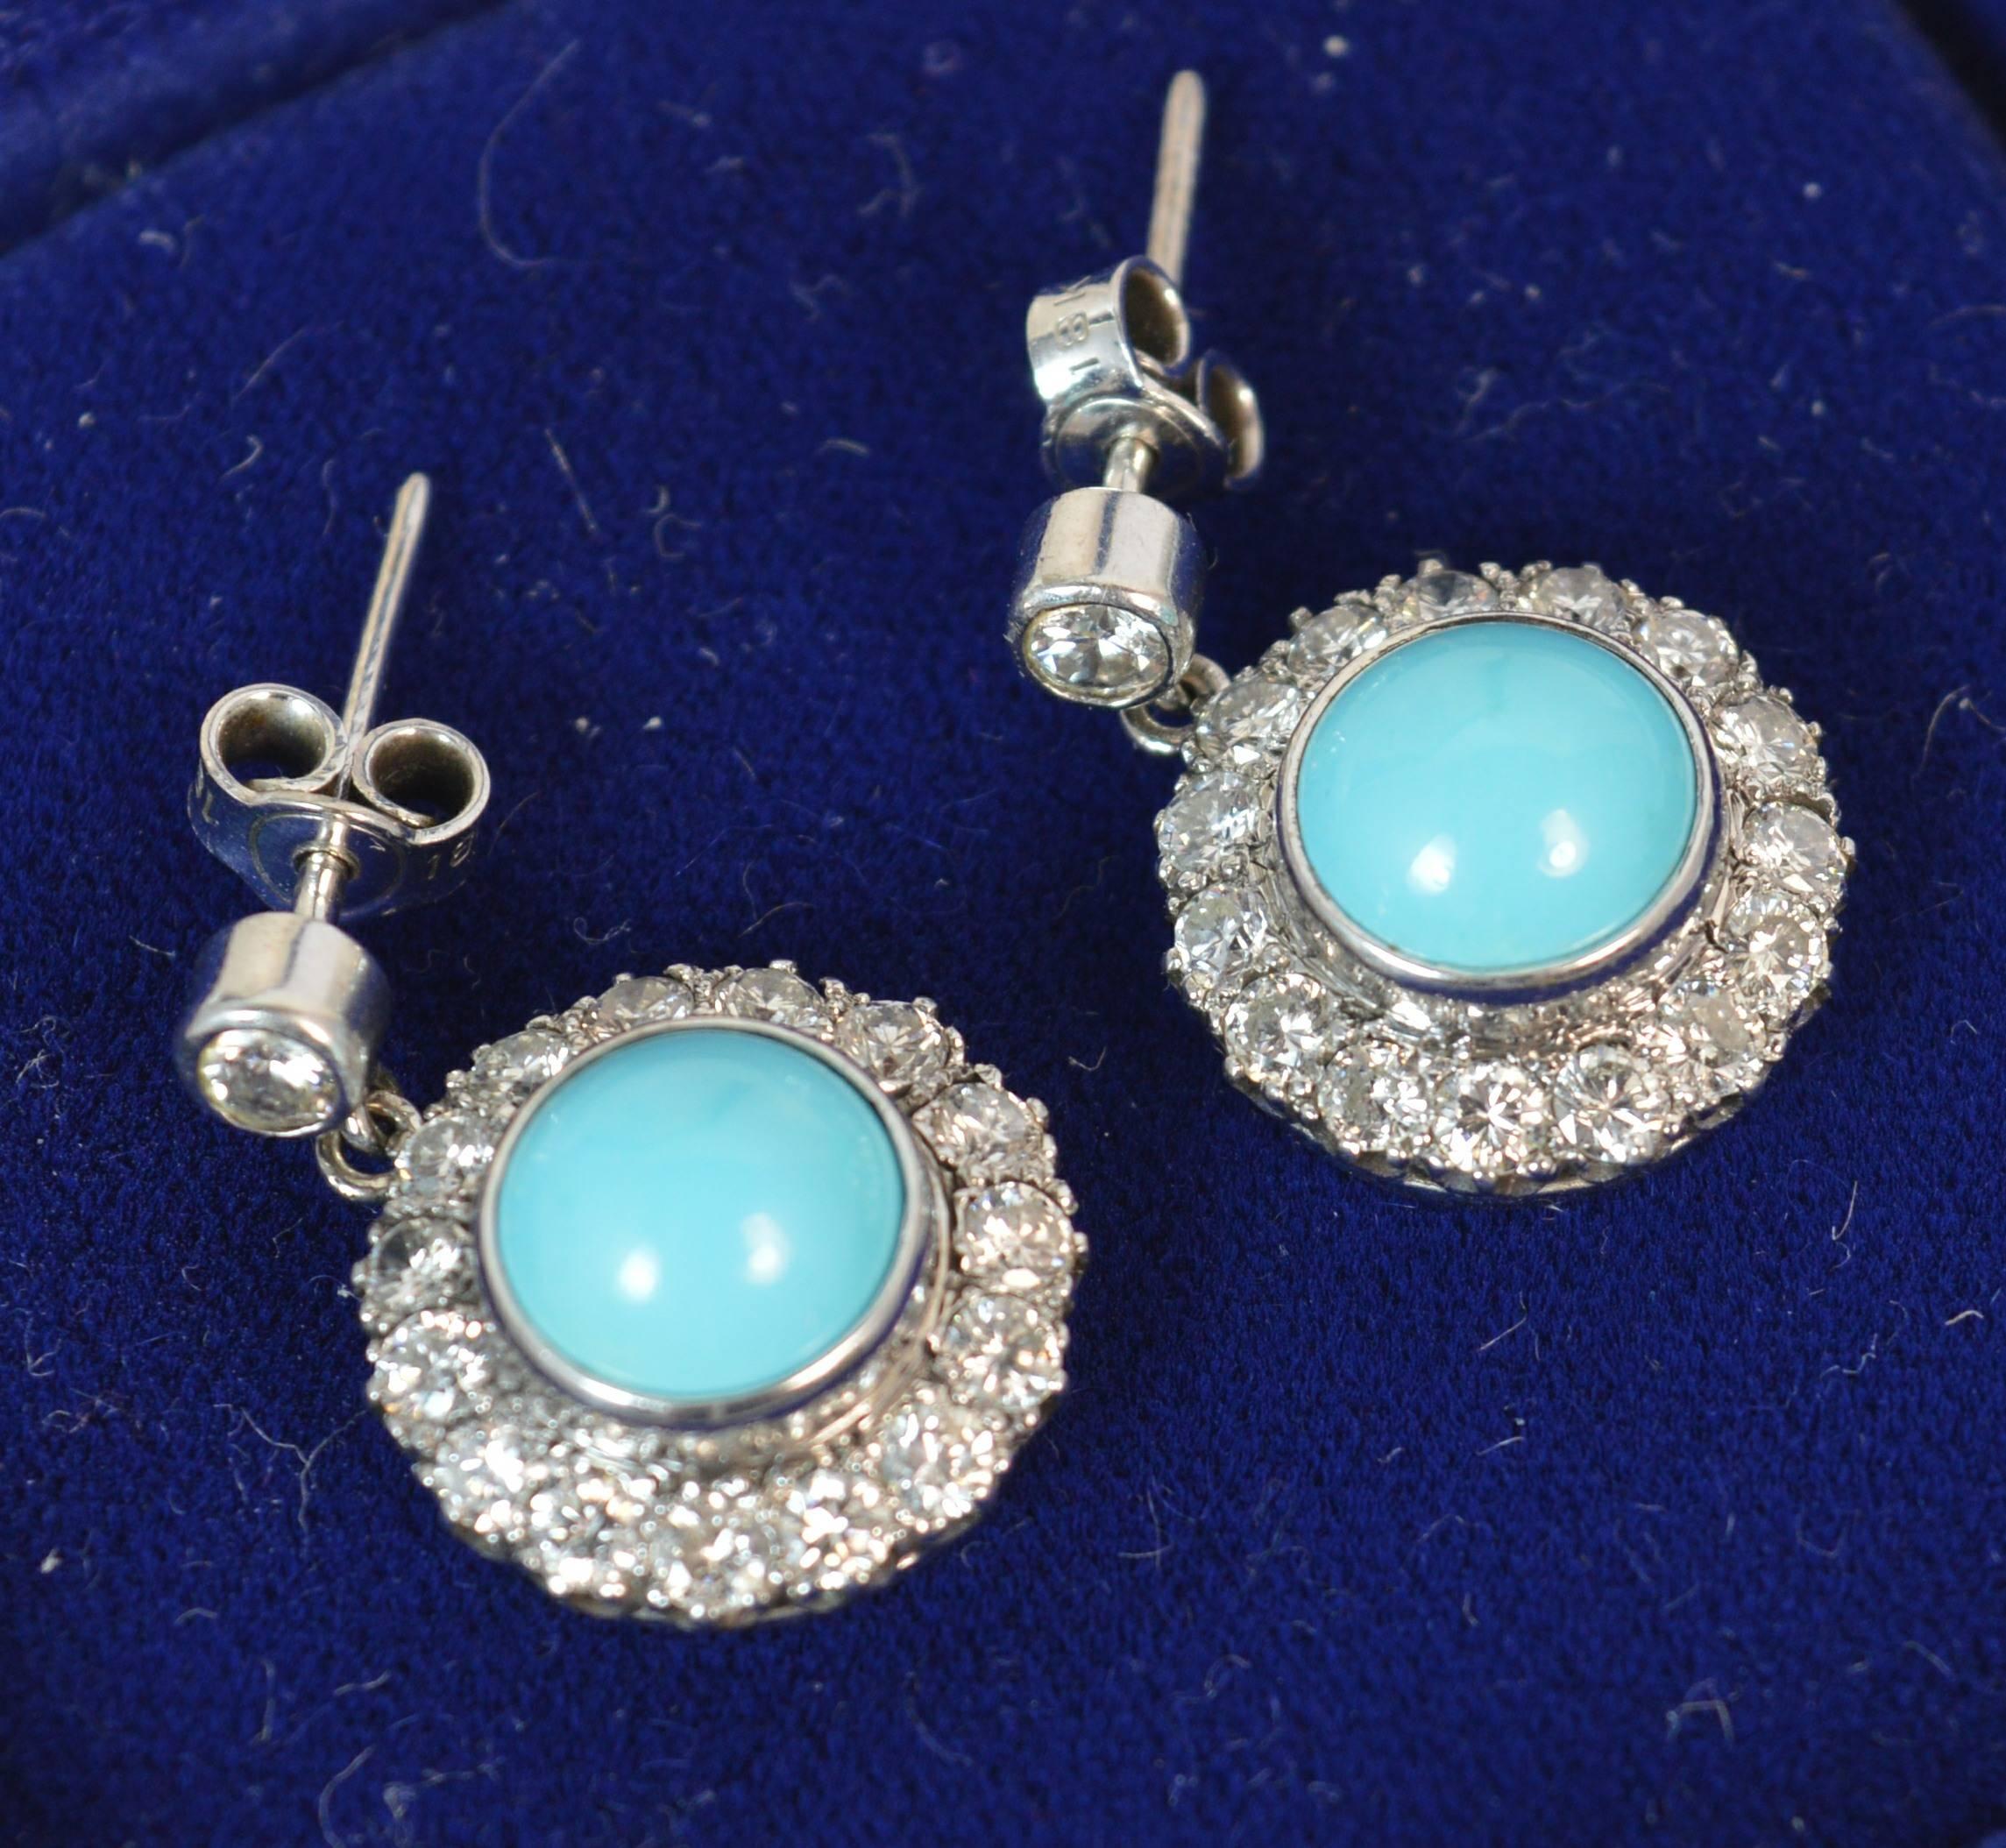 Women's Mappin & Webb 18 Carat Gold Turquoise VS 1.60 Carat Diamond Earrings in Box